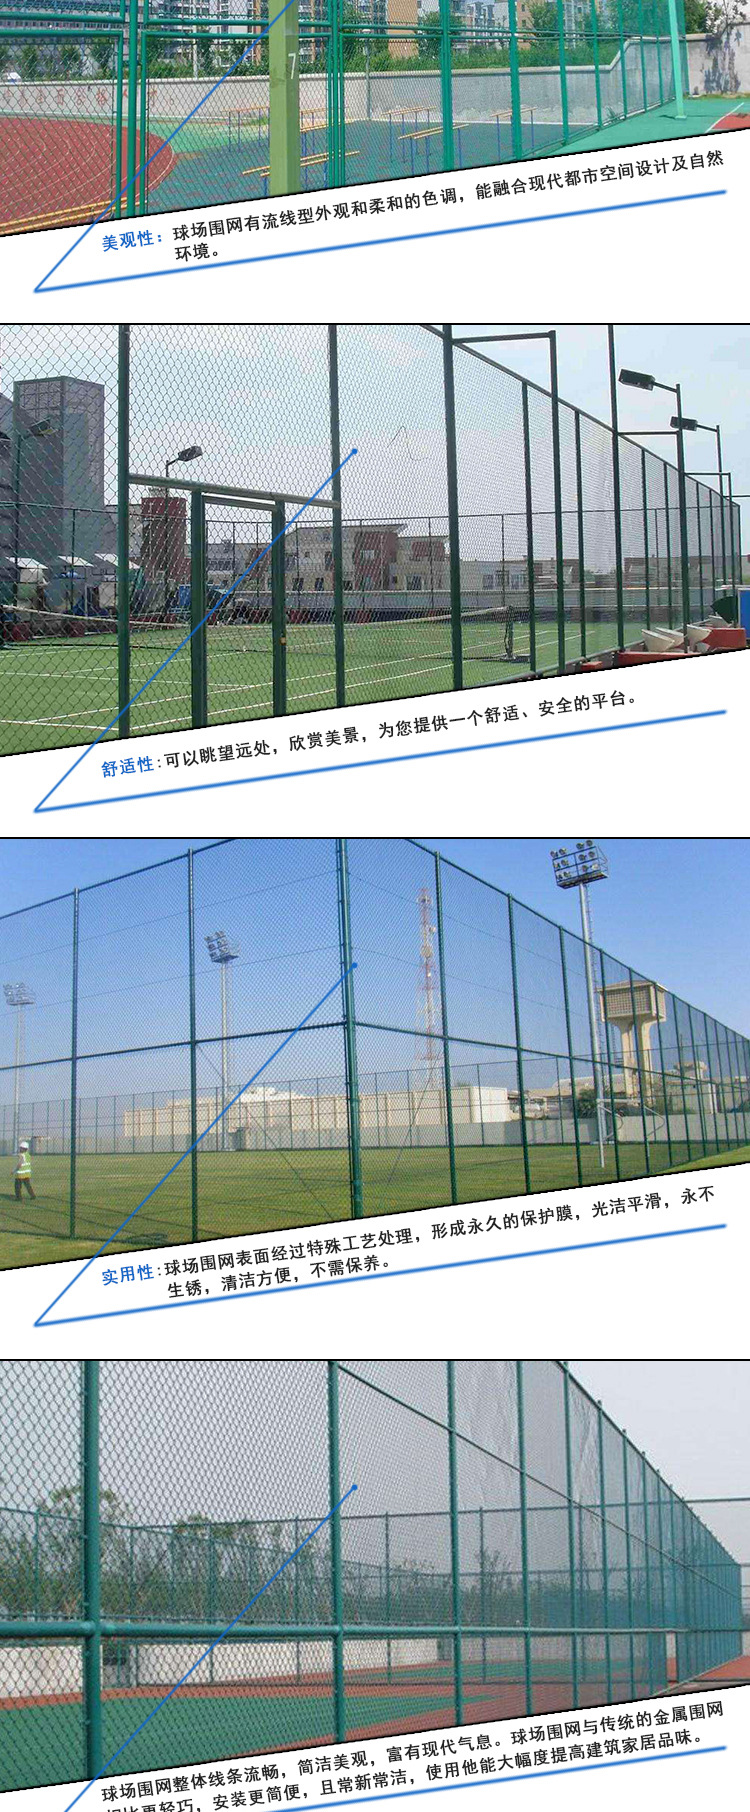 专业生产  篮球场围网  防腐蚀足球场围网 优质体育场球网示例图2